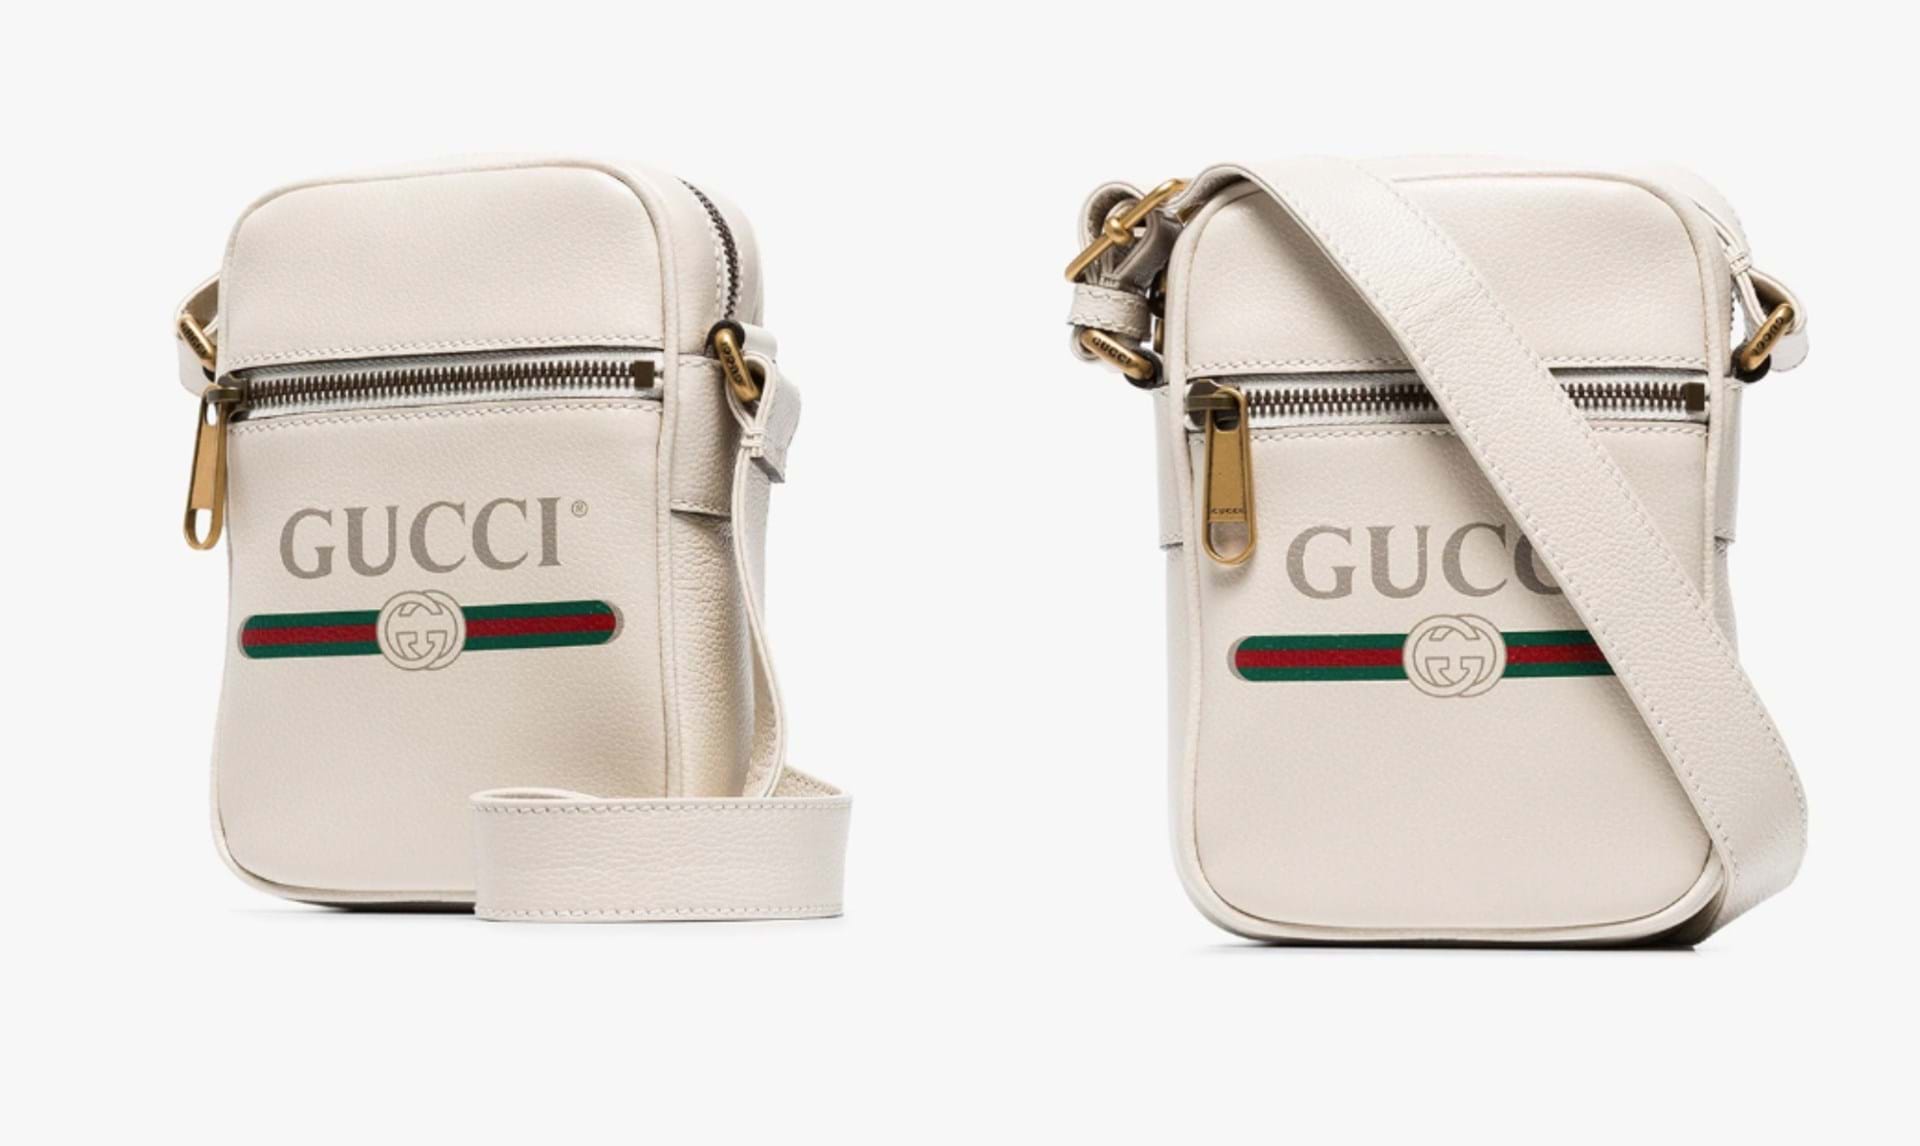 klæde sig ud rygrad Ashley Furman Gucci lancerer sommerklar taske i cremehvid læder - Euroman